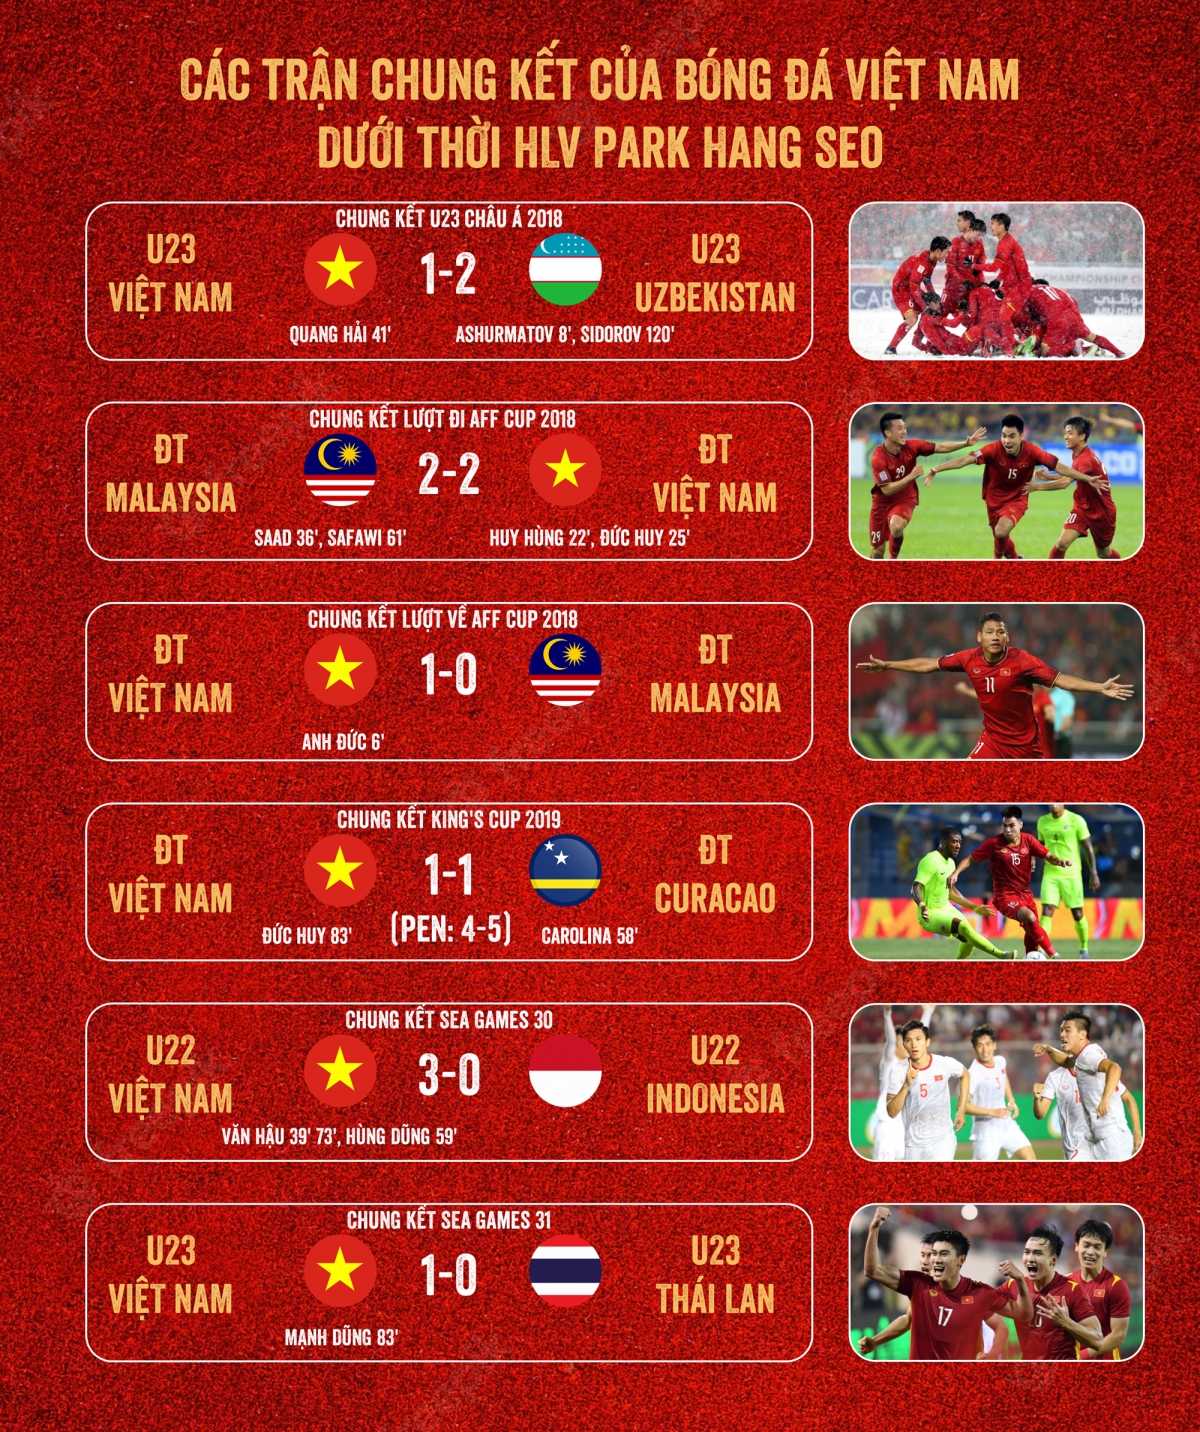 Thói quen ghi bàn của bóng đá Việt Nam ở các trận chung kết thời HLV Park Hang Seo - Ảnh 1.